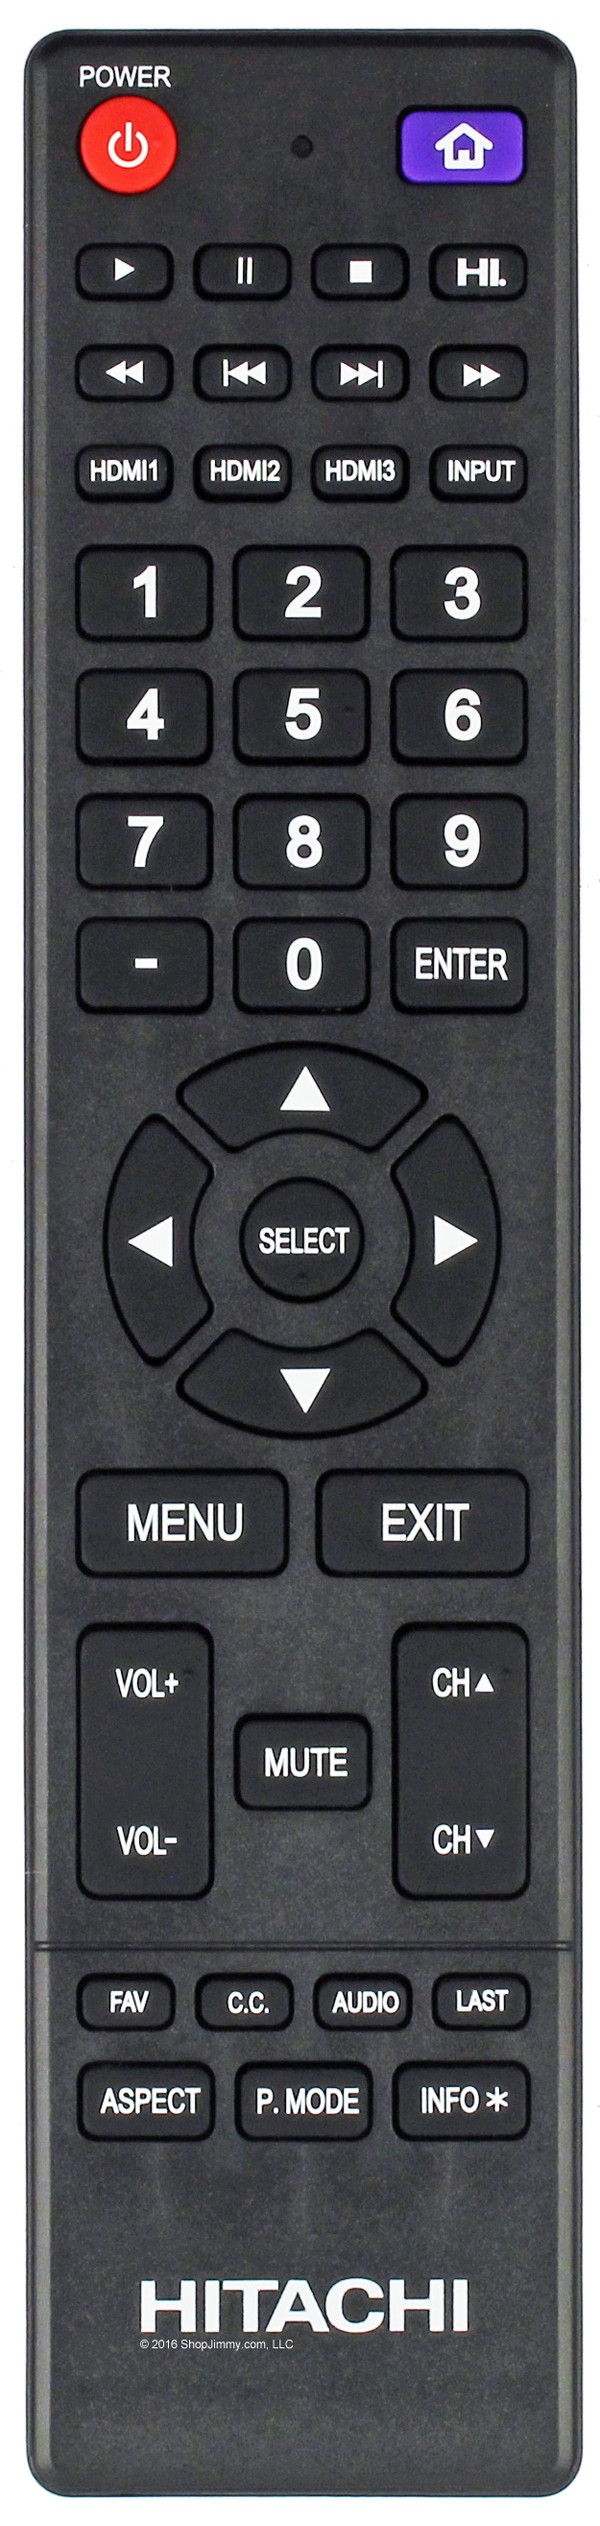 Hitachi 850125633 Remote Control-New